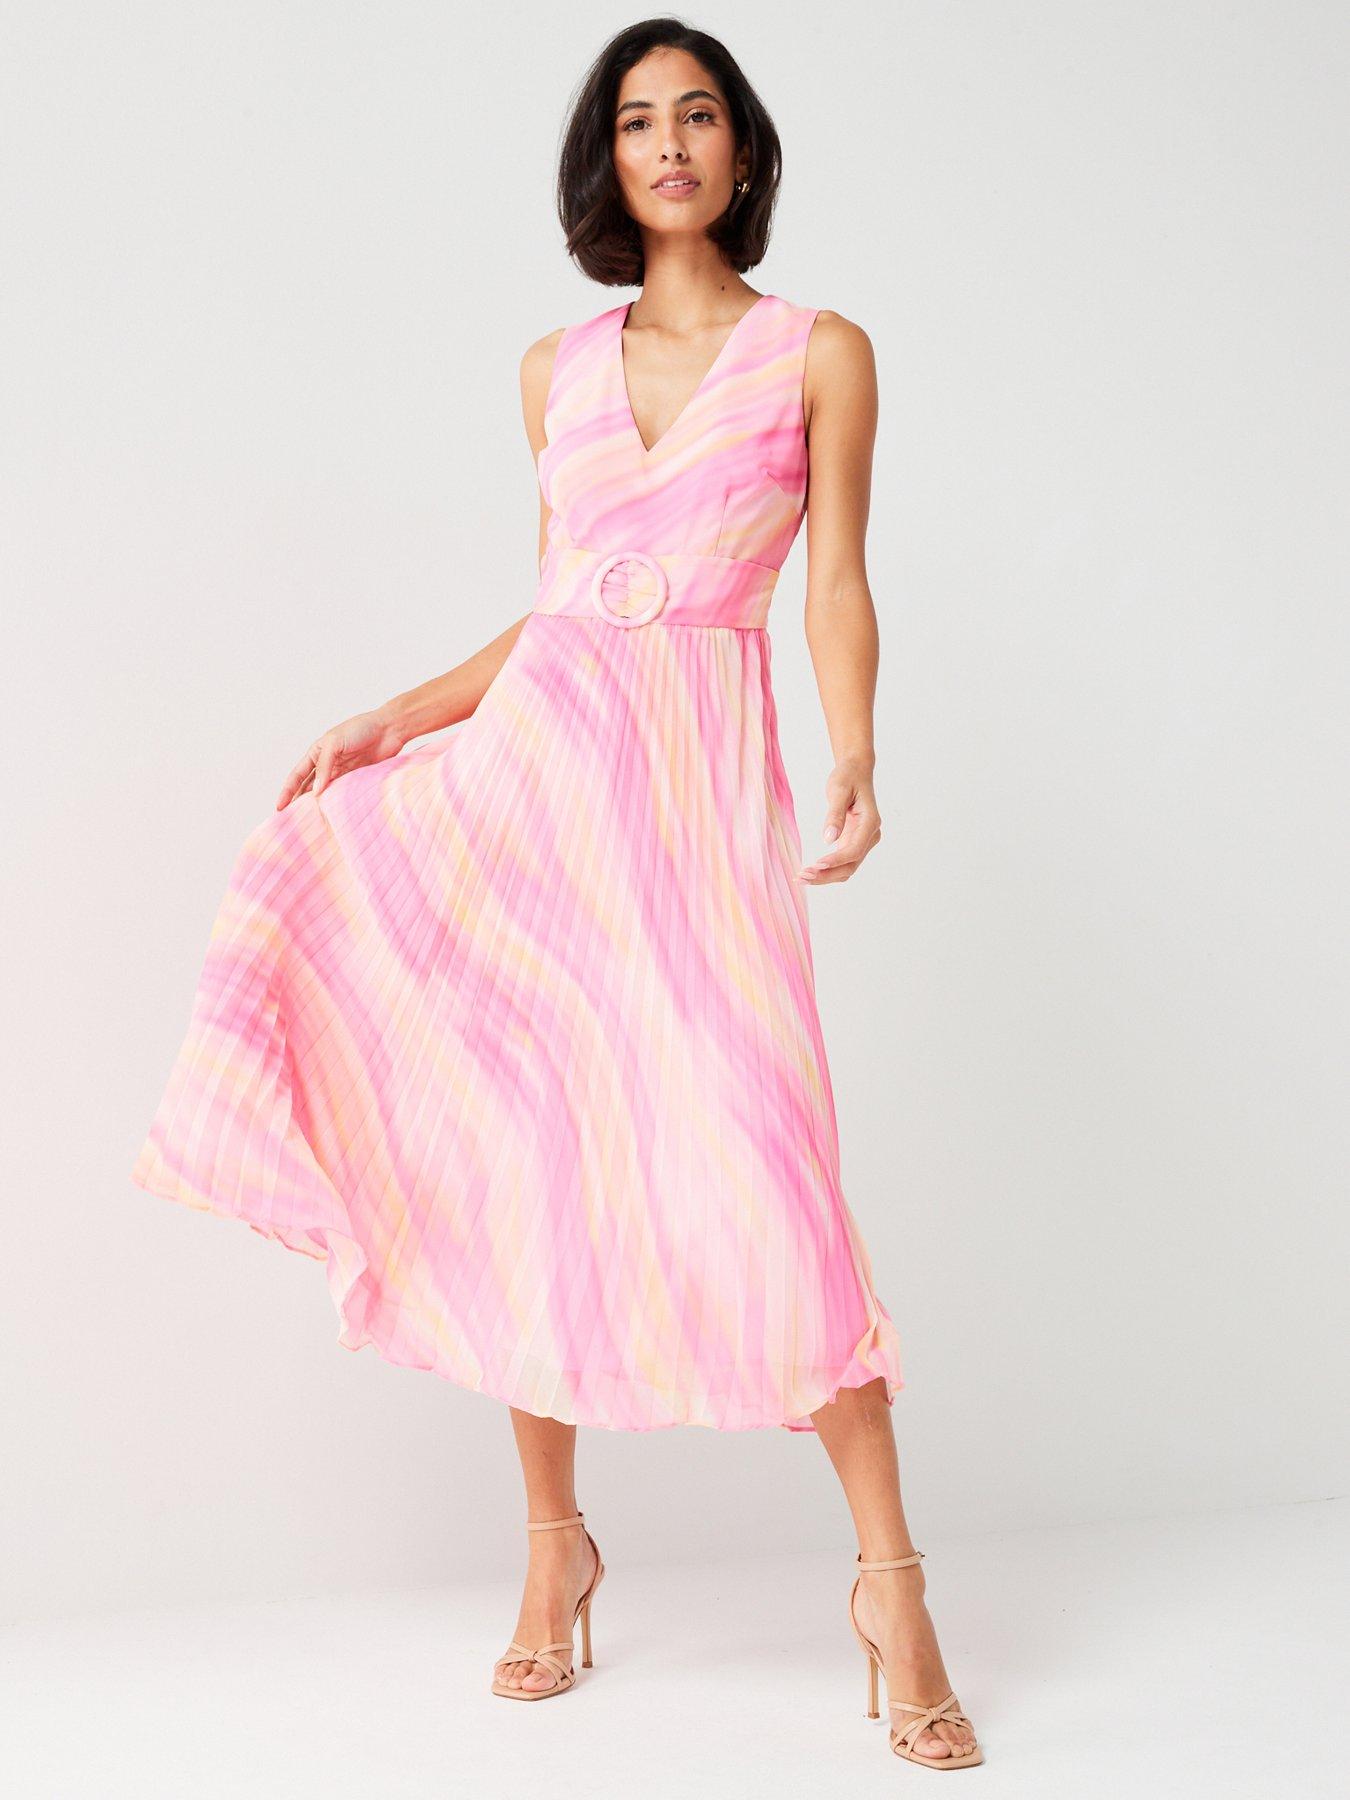 Shop Women's Summer Dresses | Sun Dresses | Very Ireland